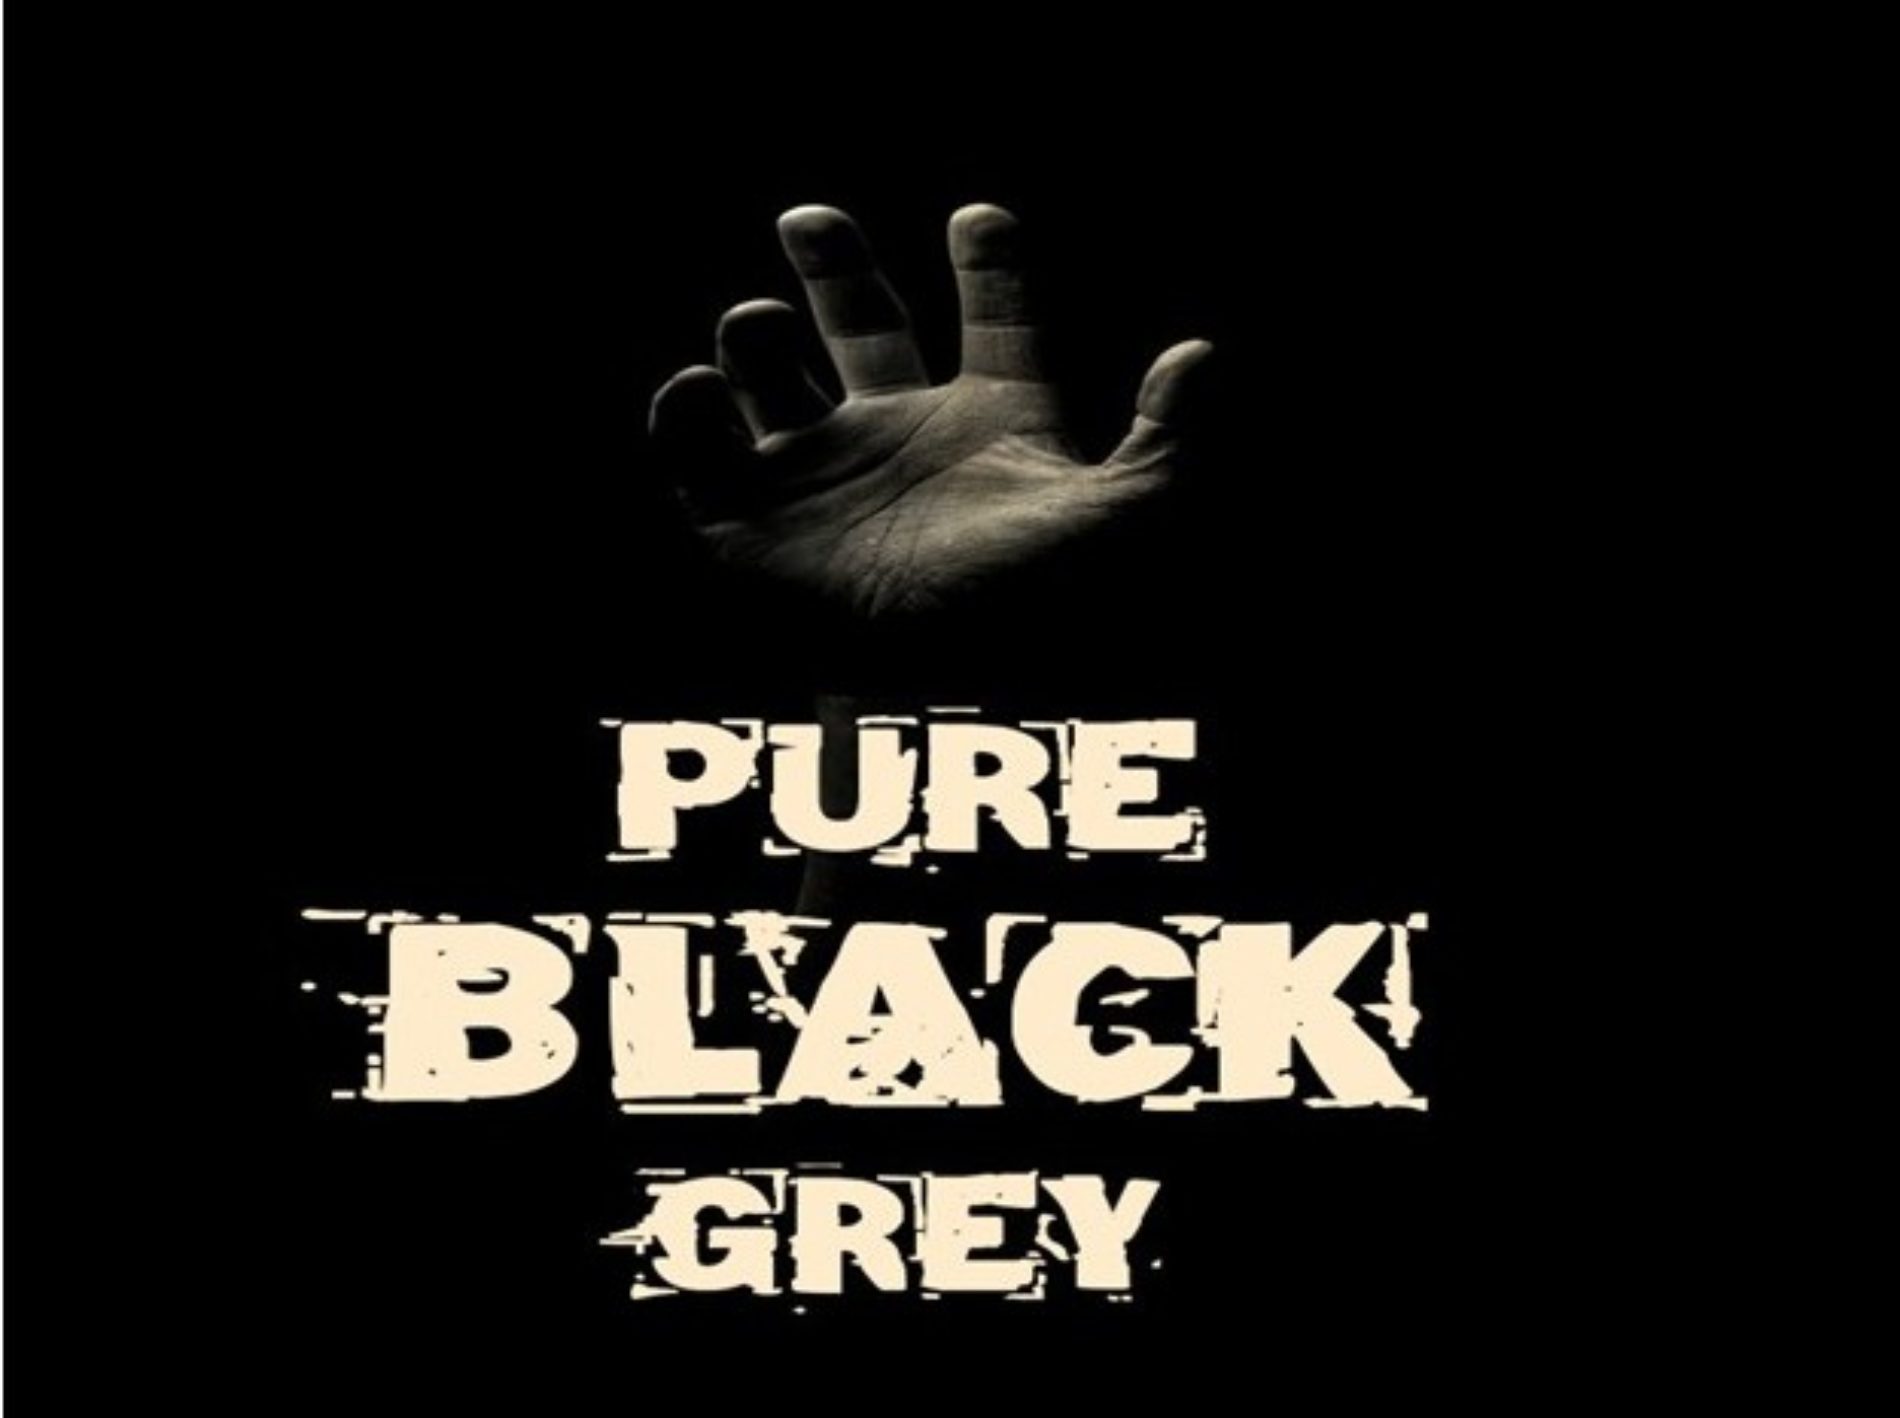 PURE BLACK GREY (Episode 8)